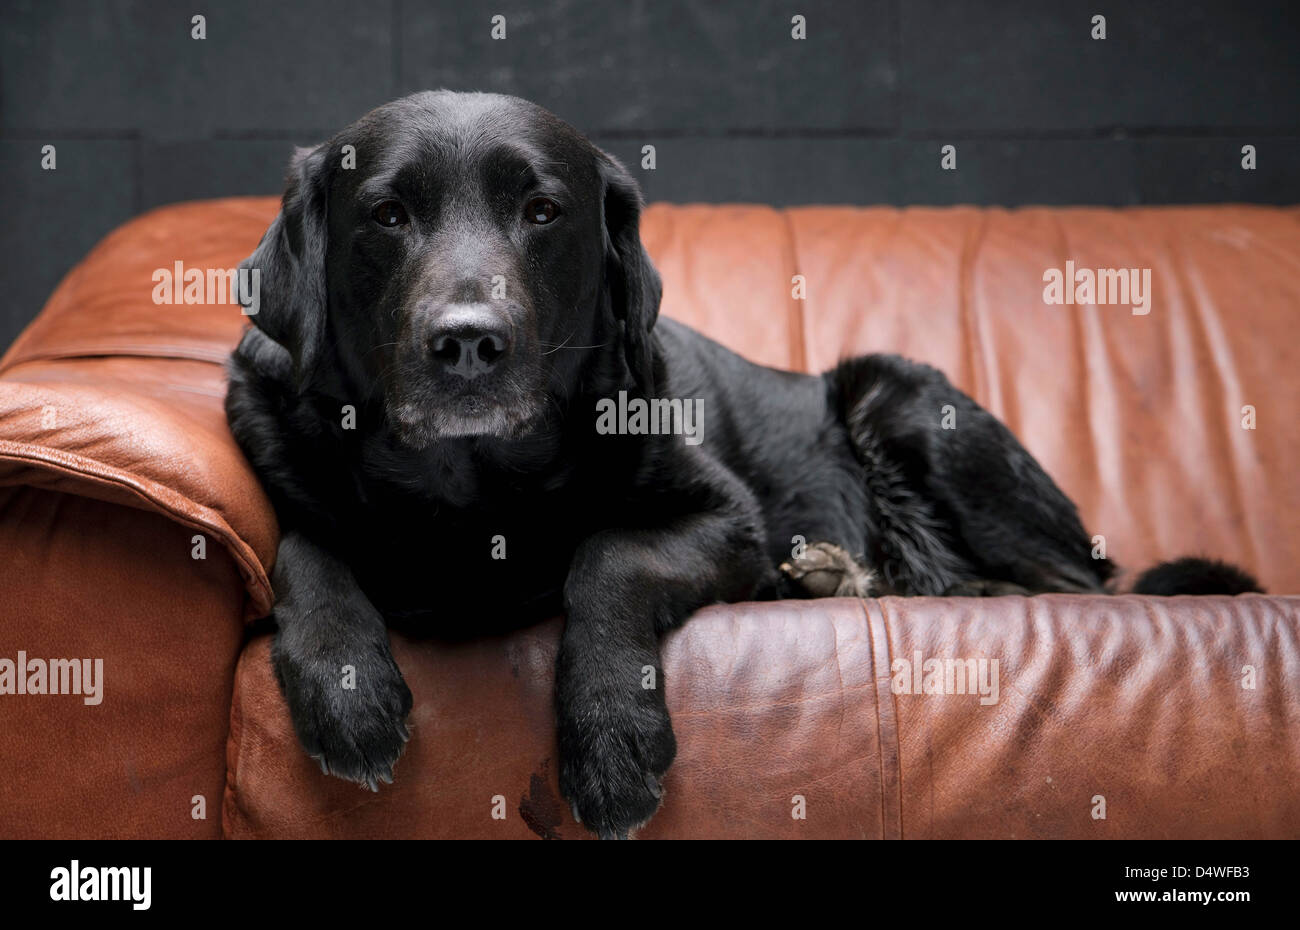 Dog sitting on leather sofa Stock Photo